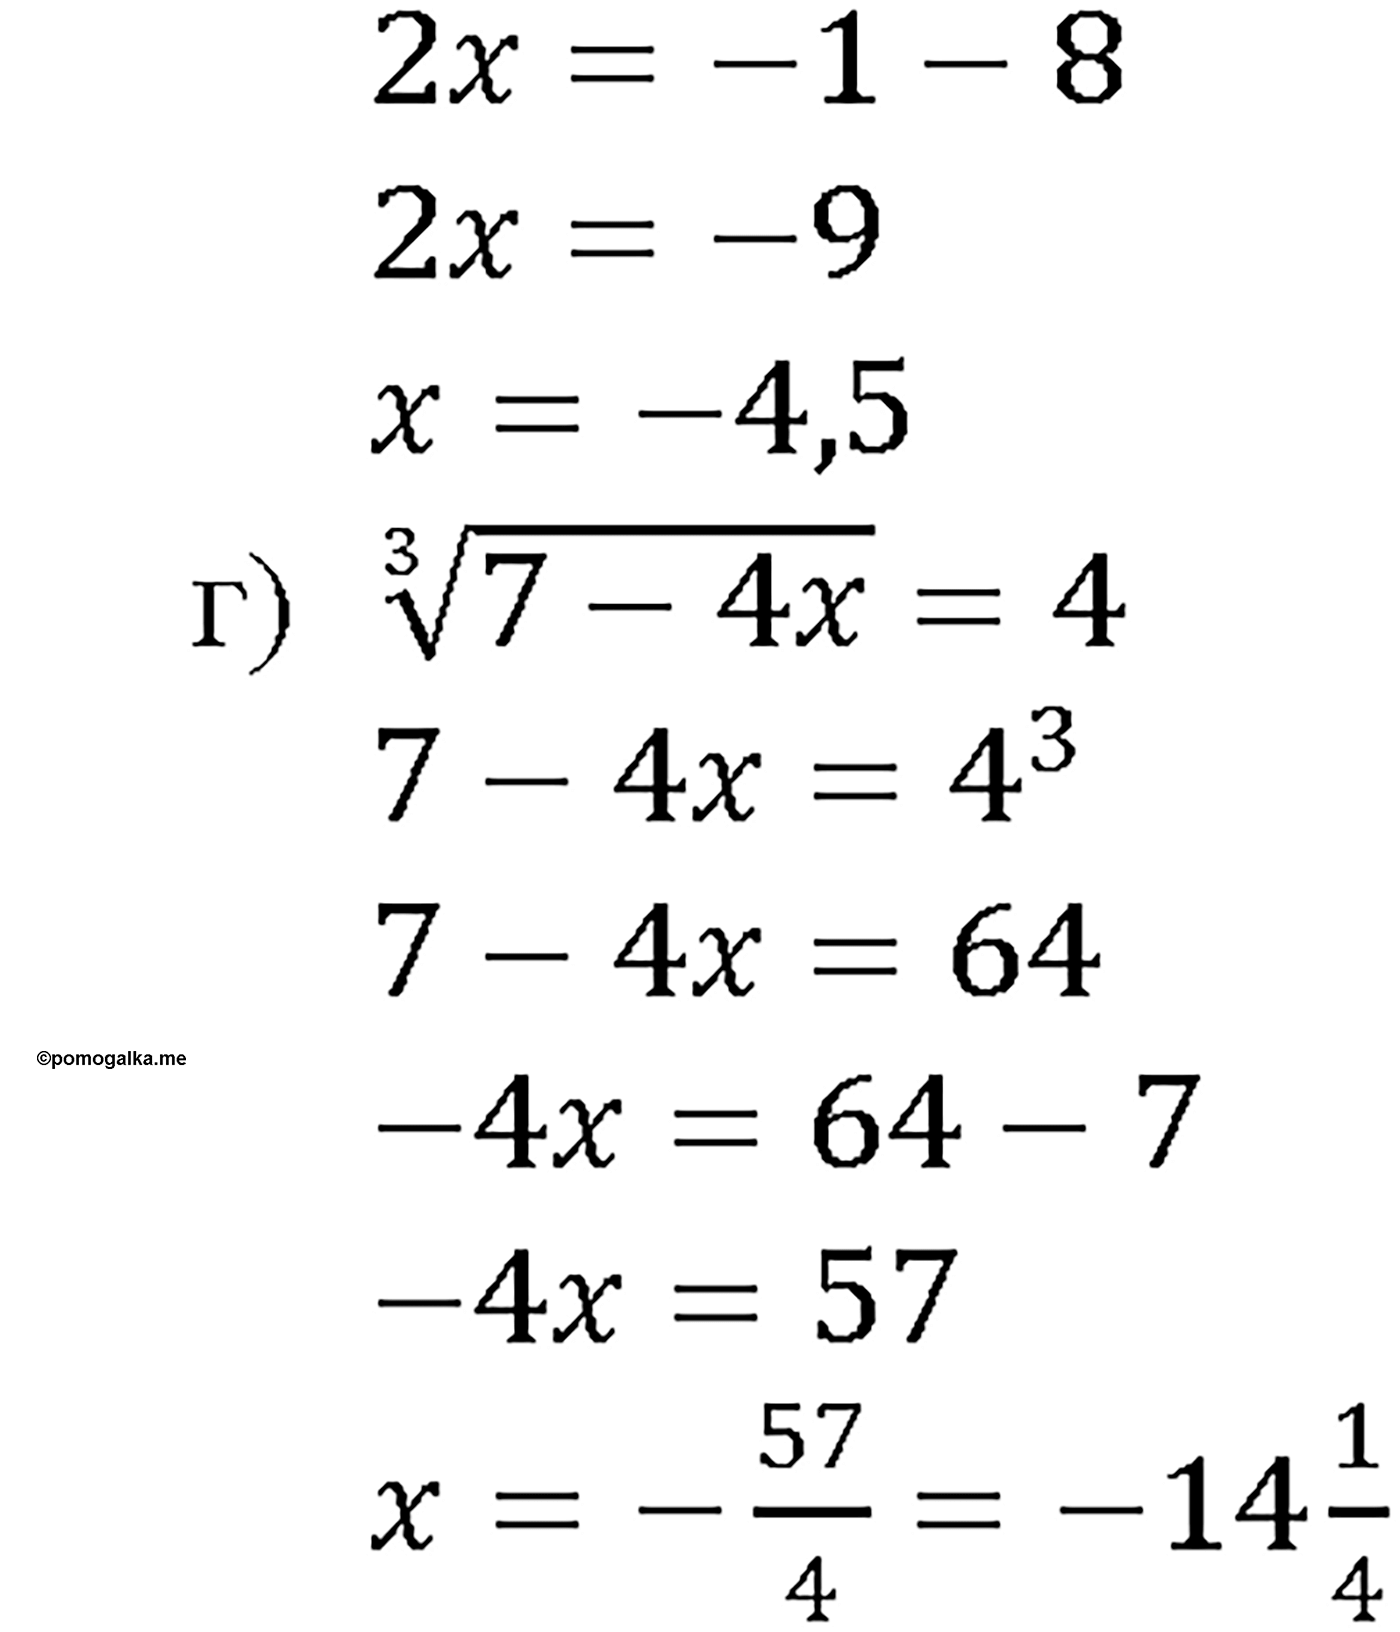 задача №33.14 алгебра 10-11 класс Мордкович